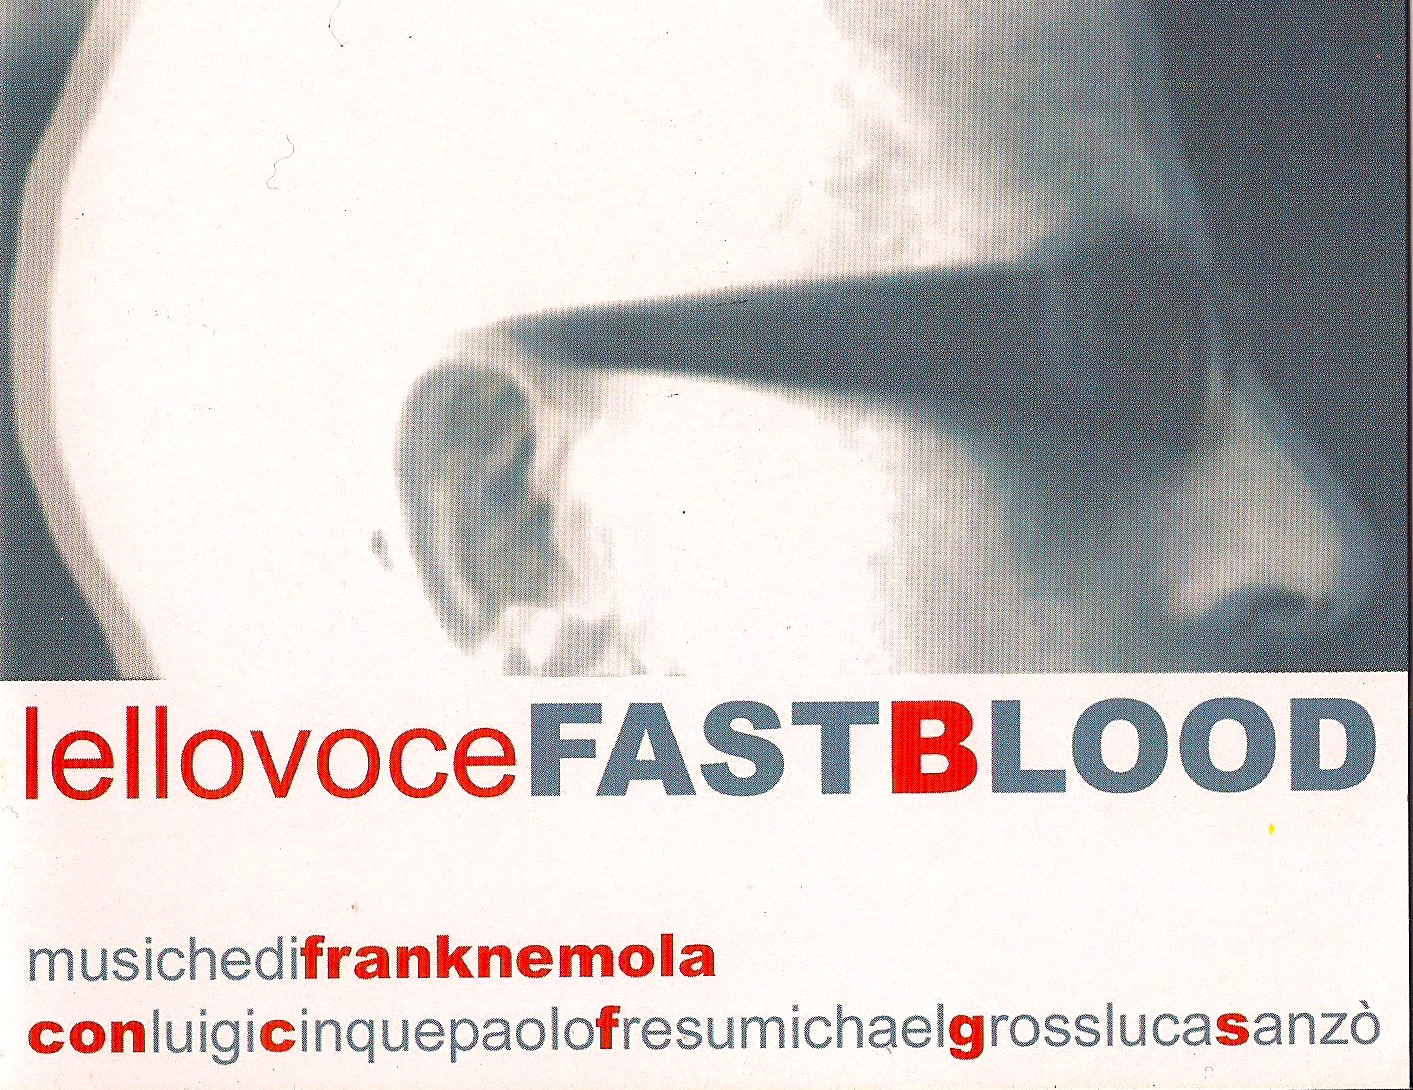 Il Progetto <i>Fast Blood</i> di Federico Vacalebre